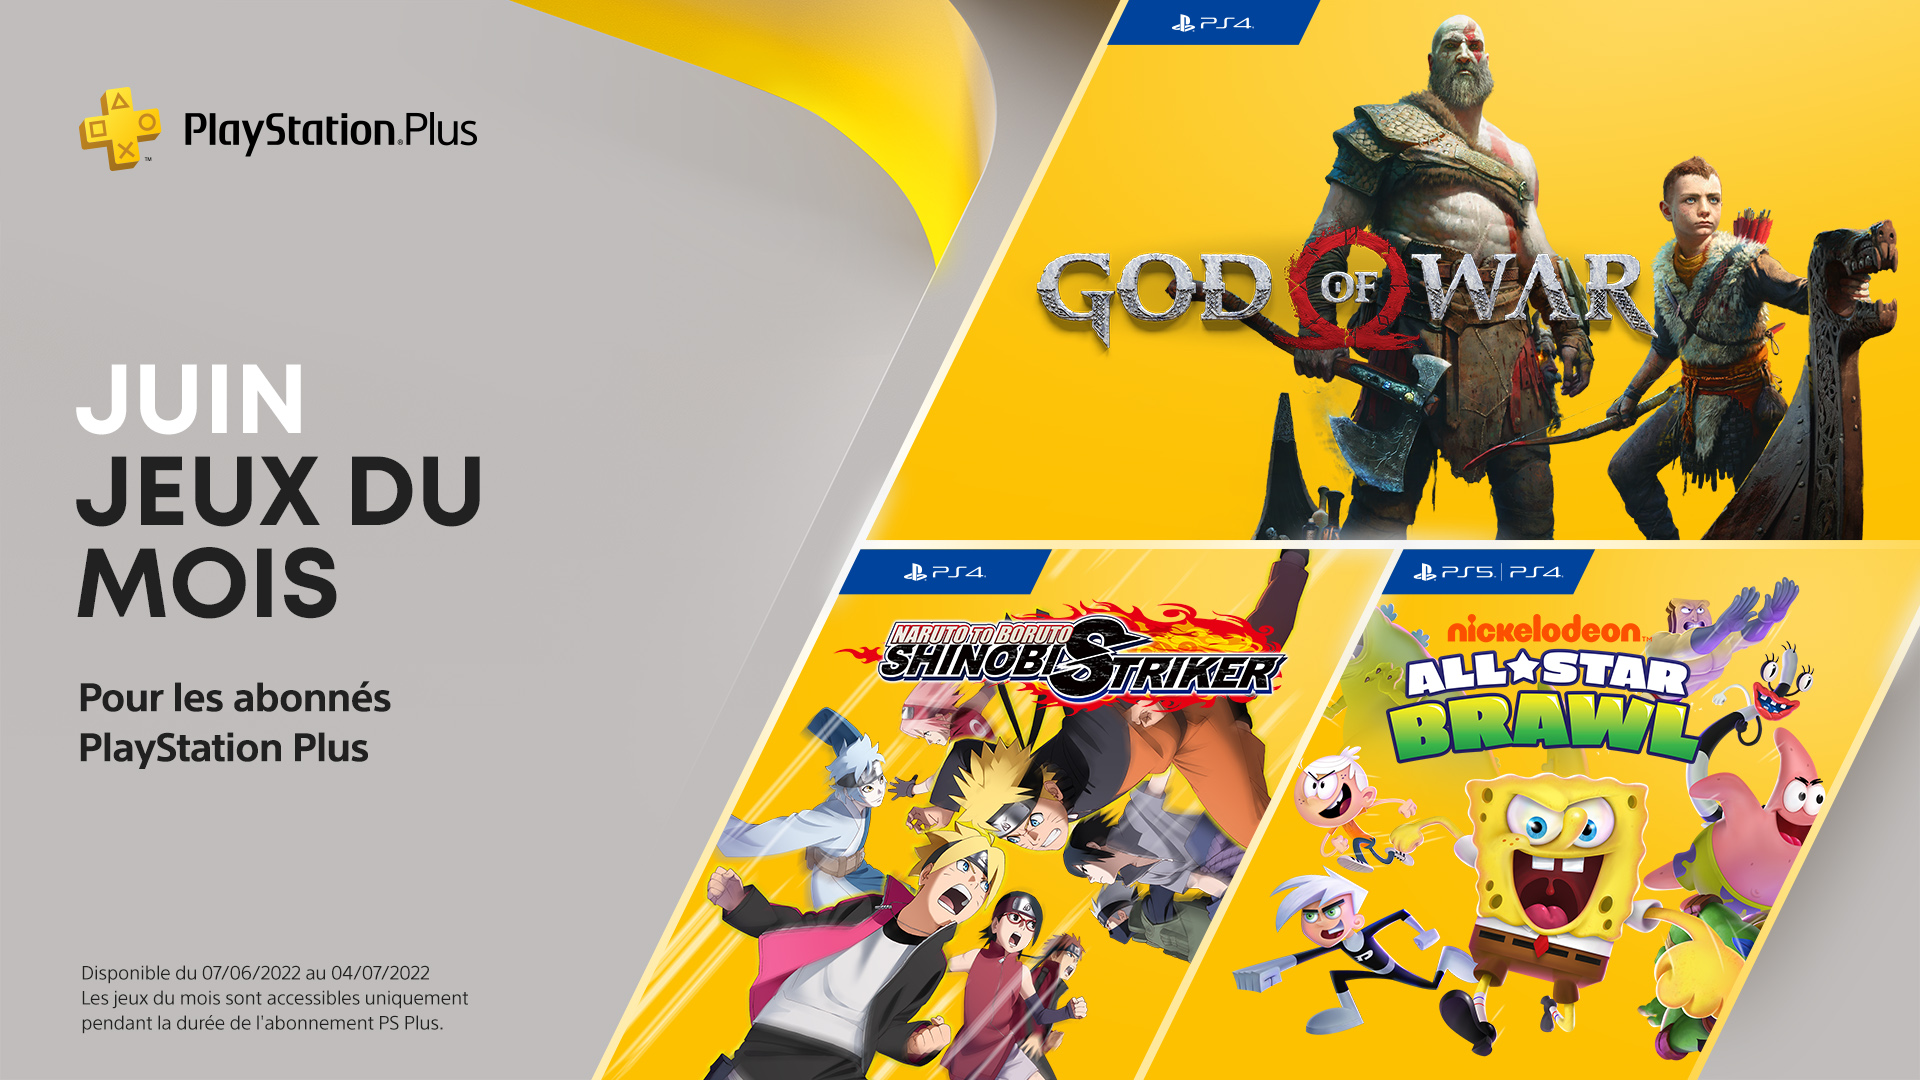 PlayStation Plus les jeux gratuits du mois de juin 2022 GeekTest